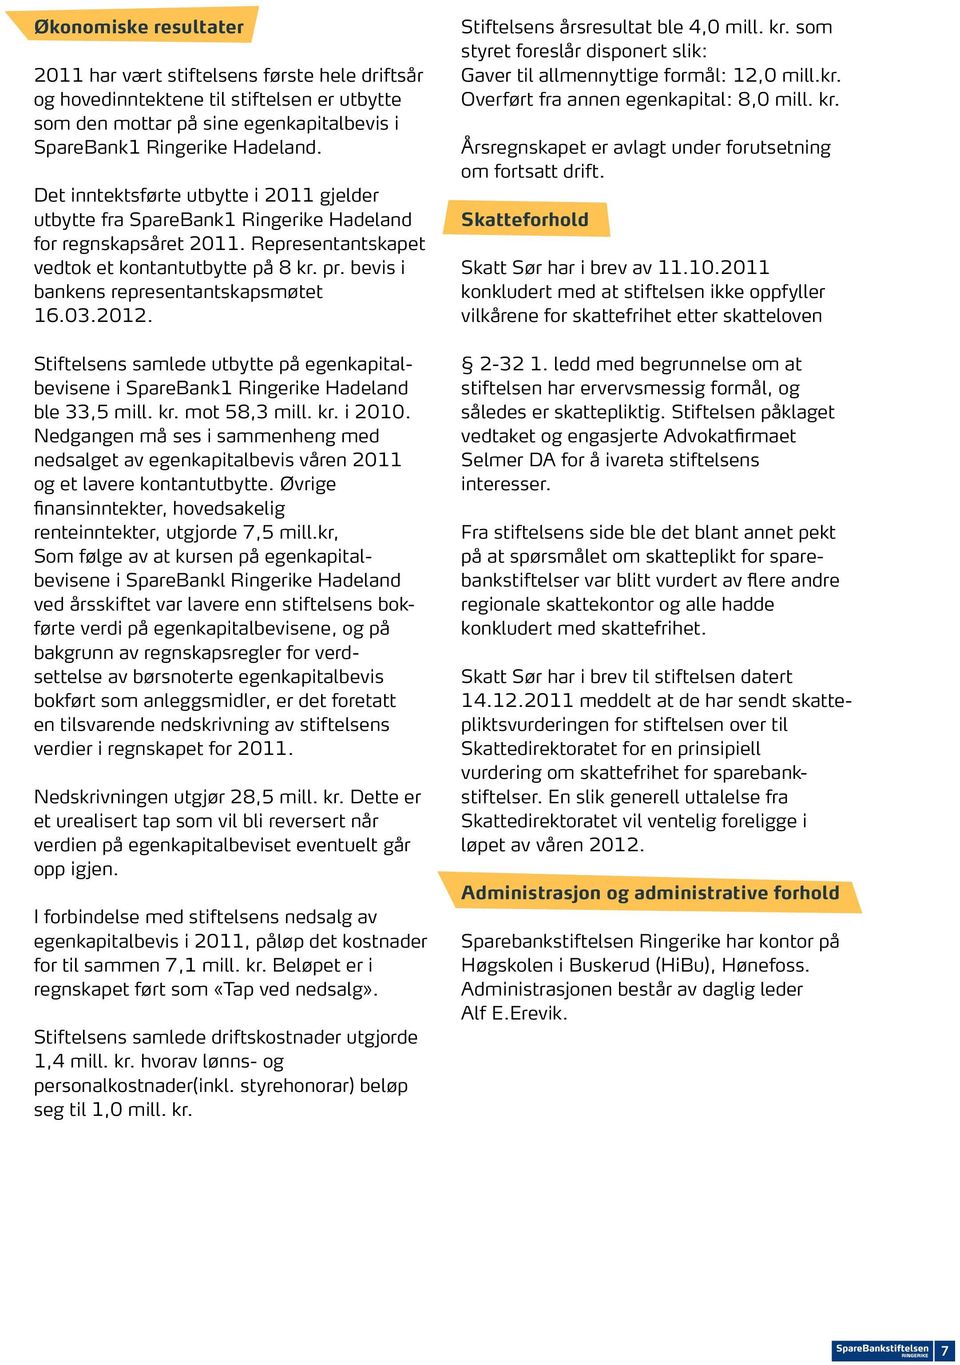 bevis i bankens representantskapsmøtet 16.03.2012. Stiftelsens samlede utbytte på egenkapitalbevisene i SpareBank1 Ringerike Hadeland ble 33,5 mill. kr. mot 58,3 mill. kr. i 2010.